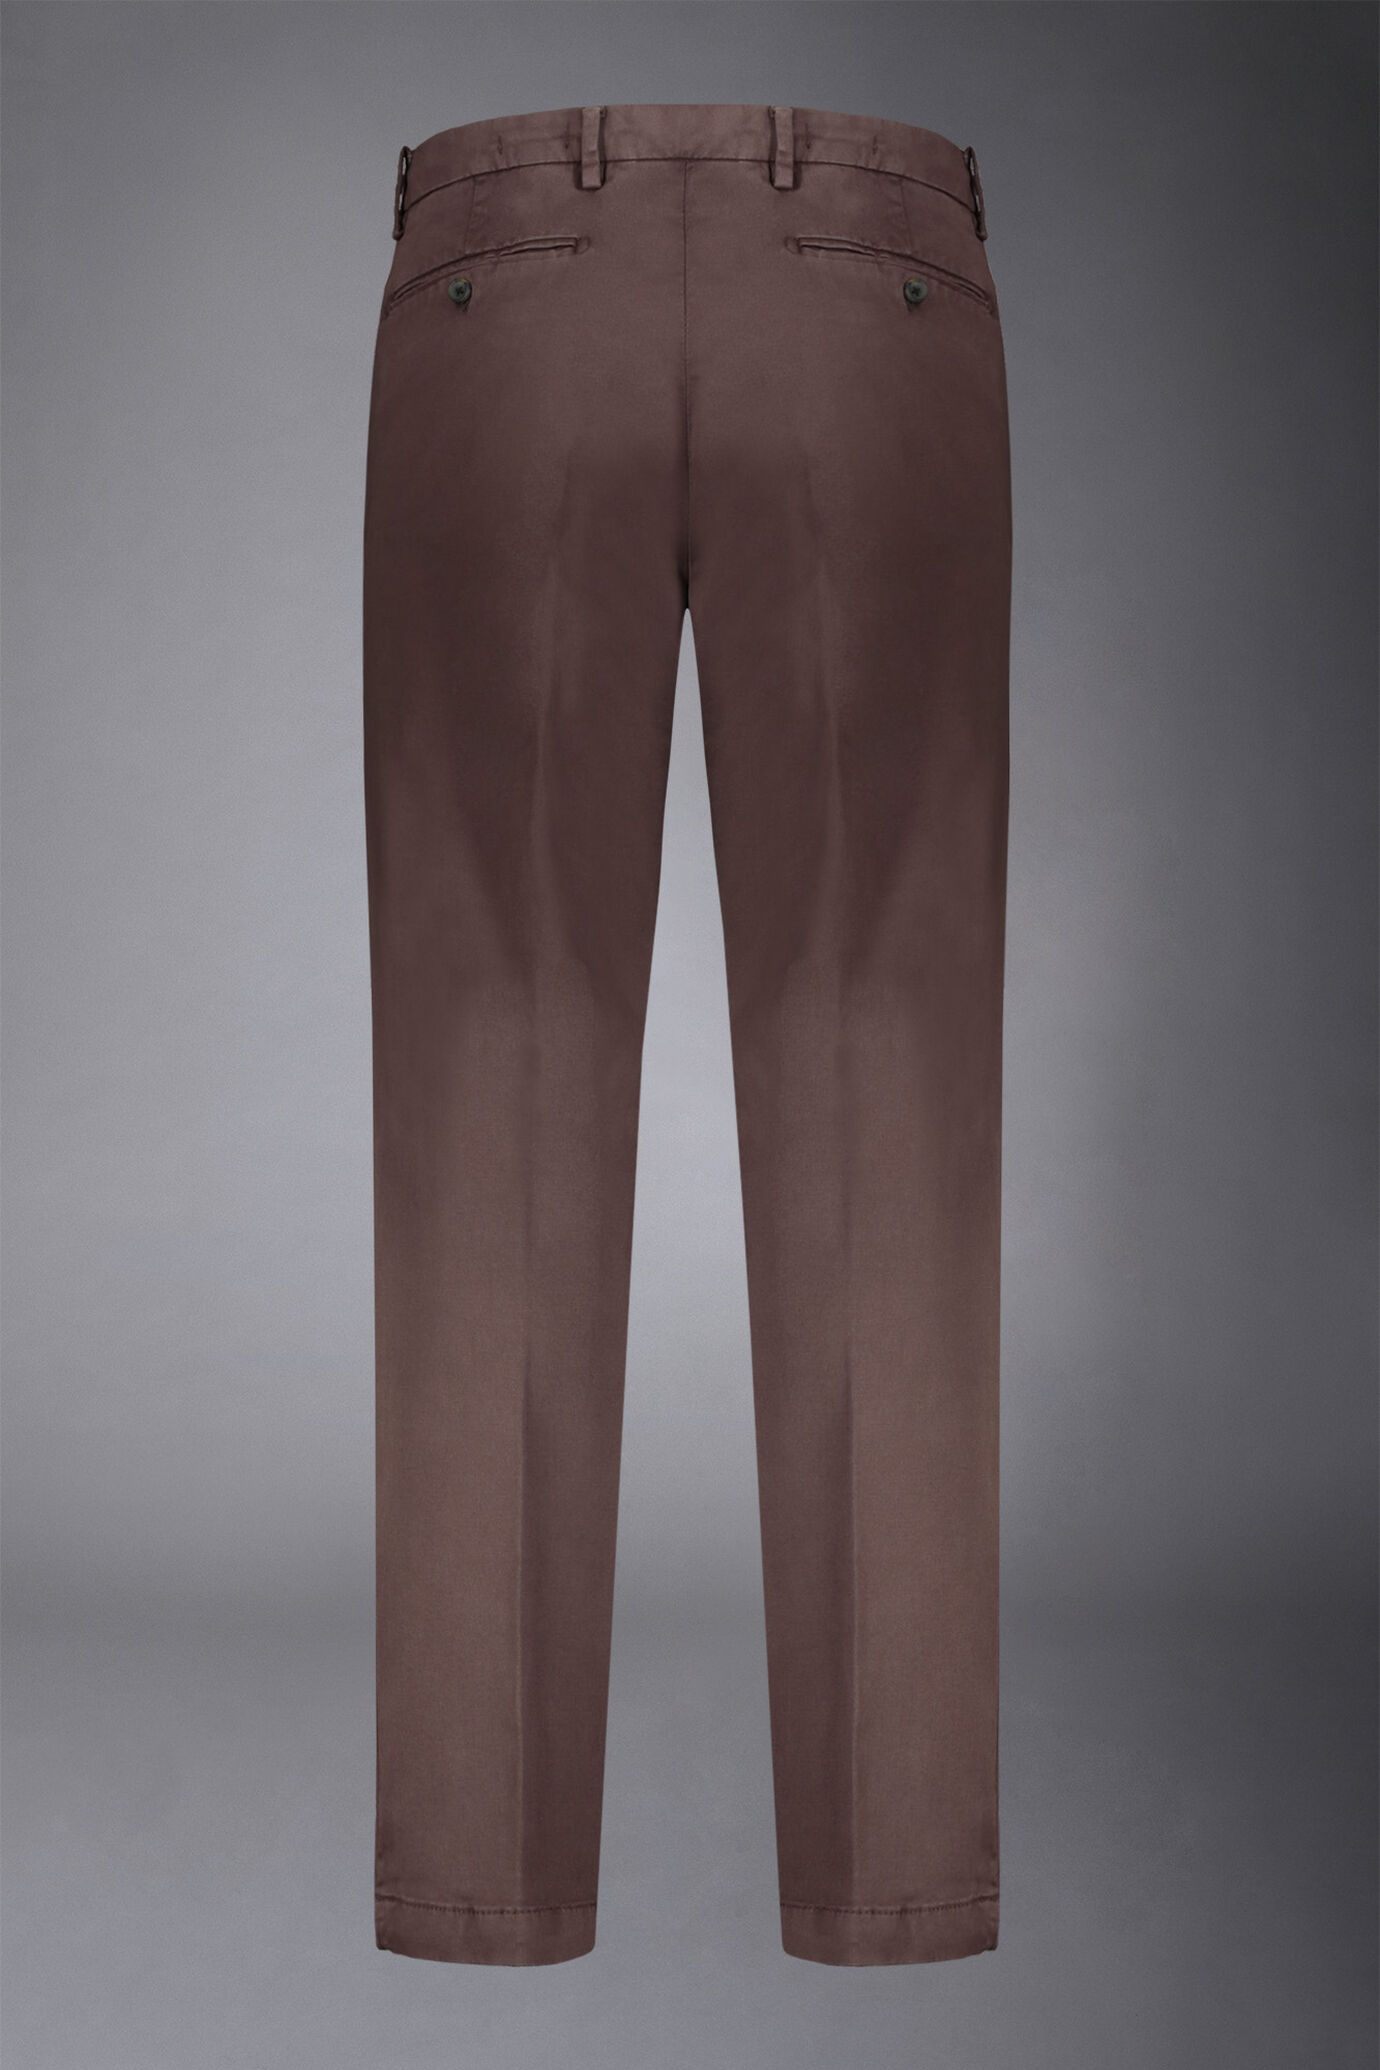 Pantalone chino uomo classico costruzione twill regular fit image number 5